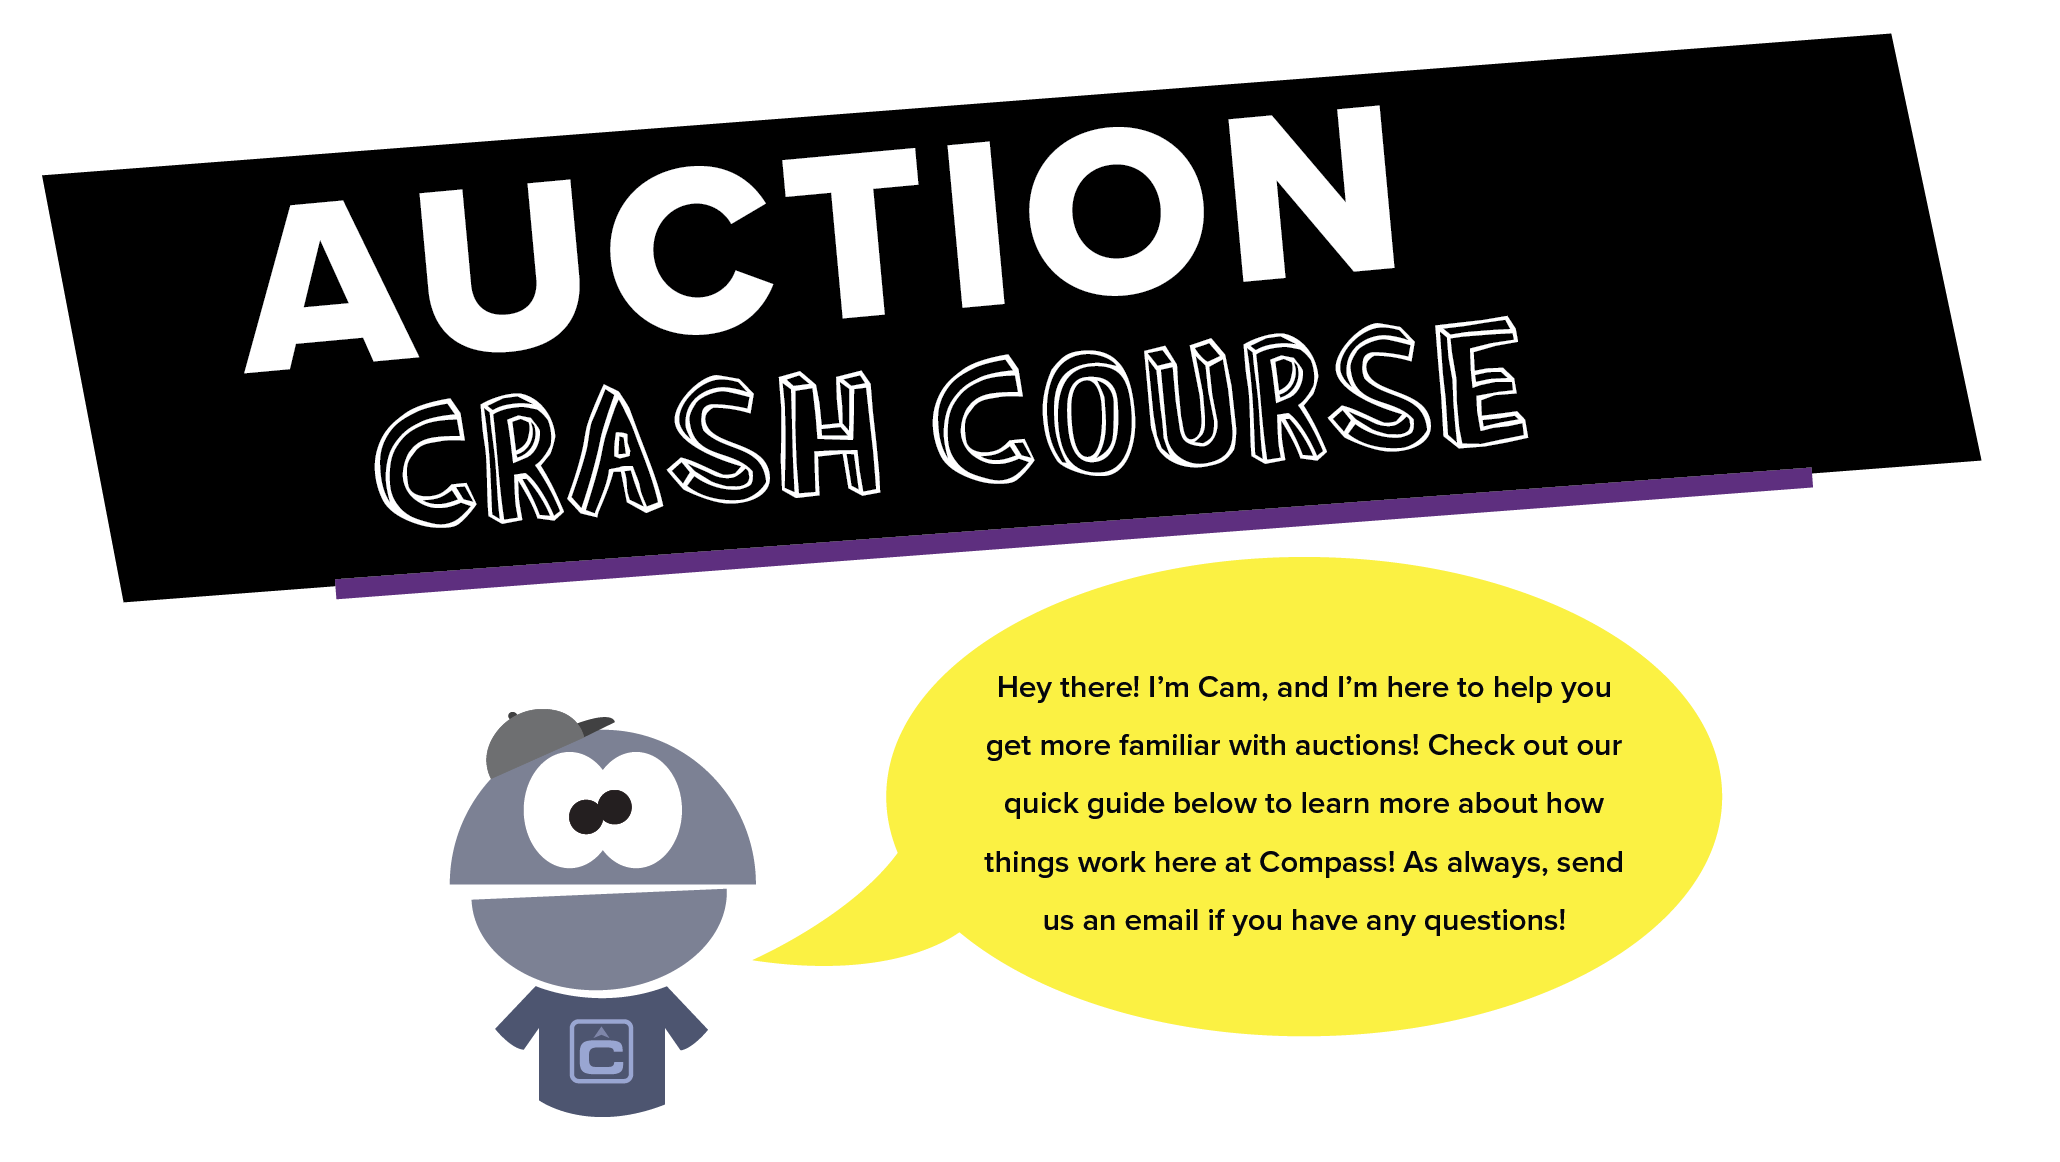 Auction Crash Course